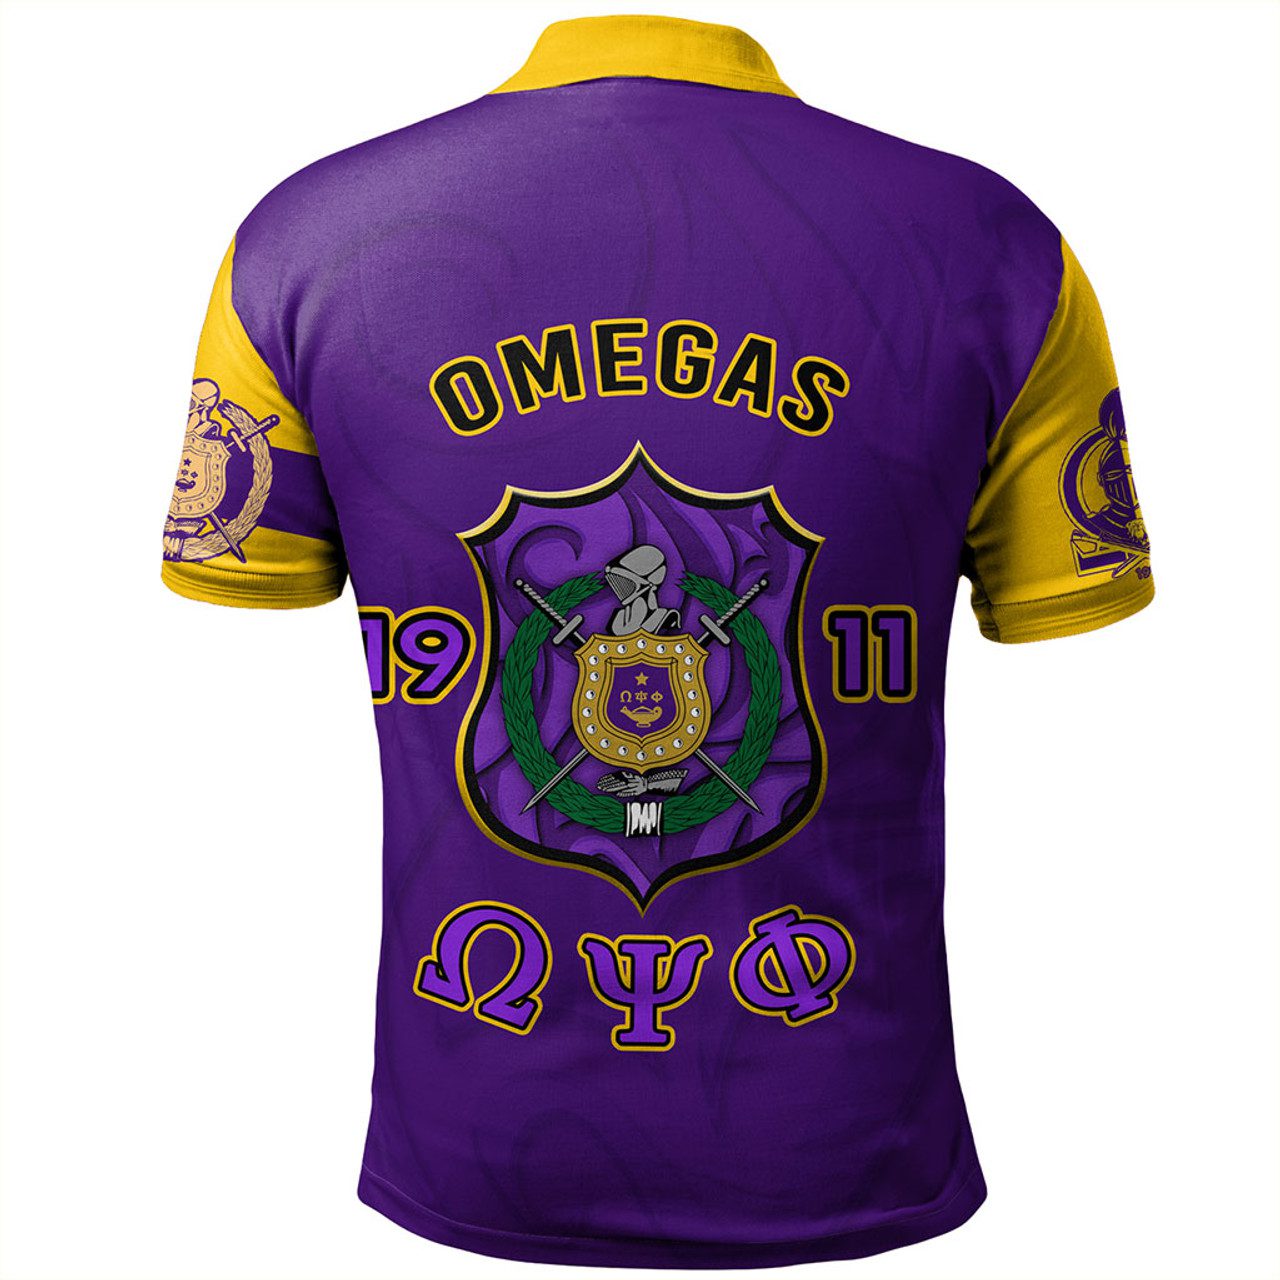 Omega Psi Phi Polo Shirt Motto